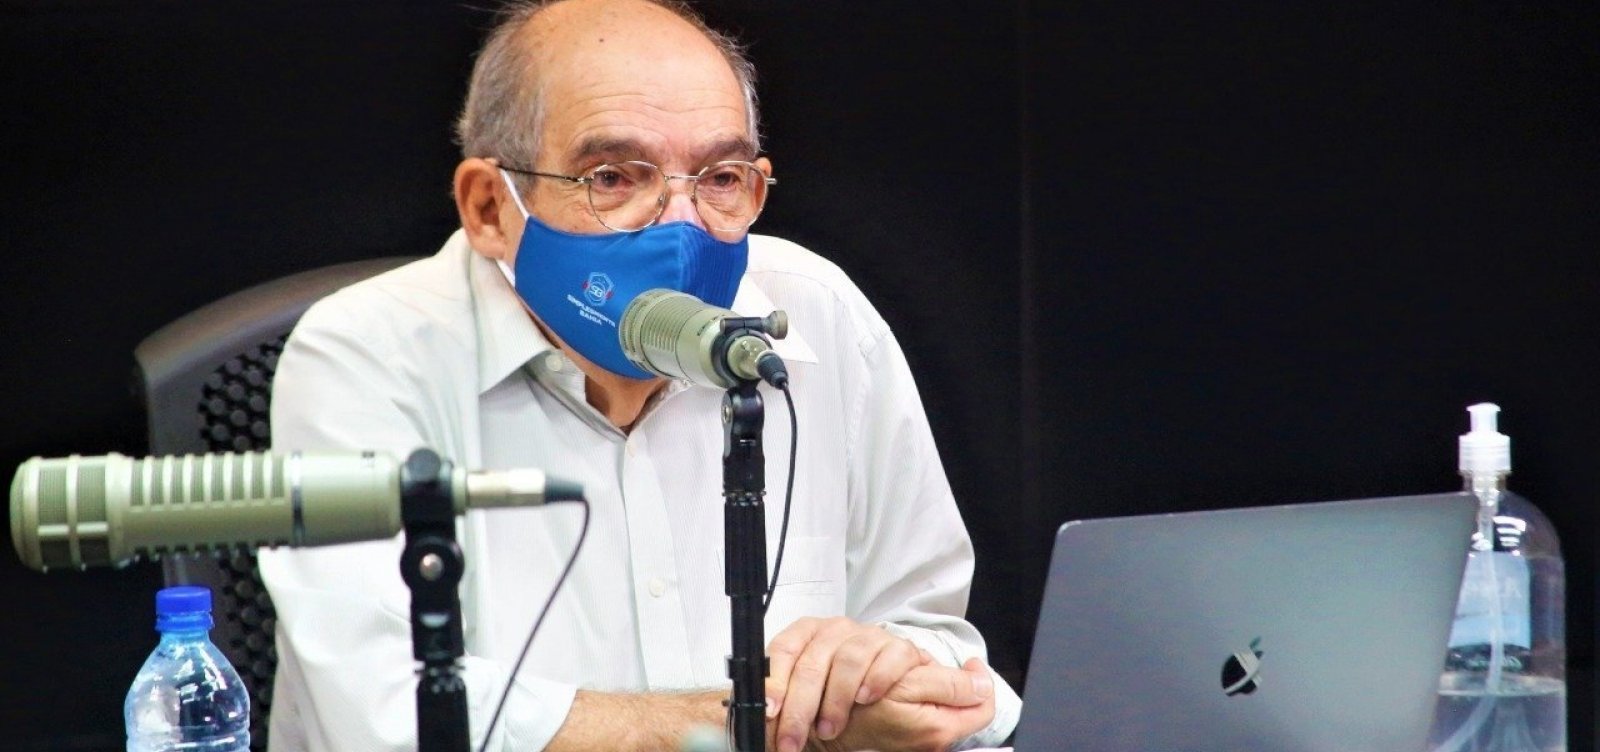 MK critica postura 'equivocada' do governo Bolsonaro em relação às vacinas; ouça